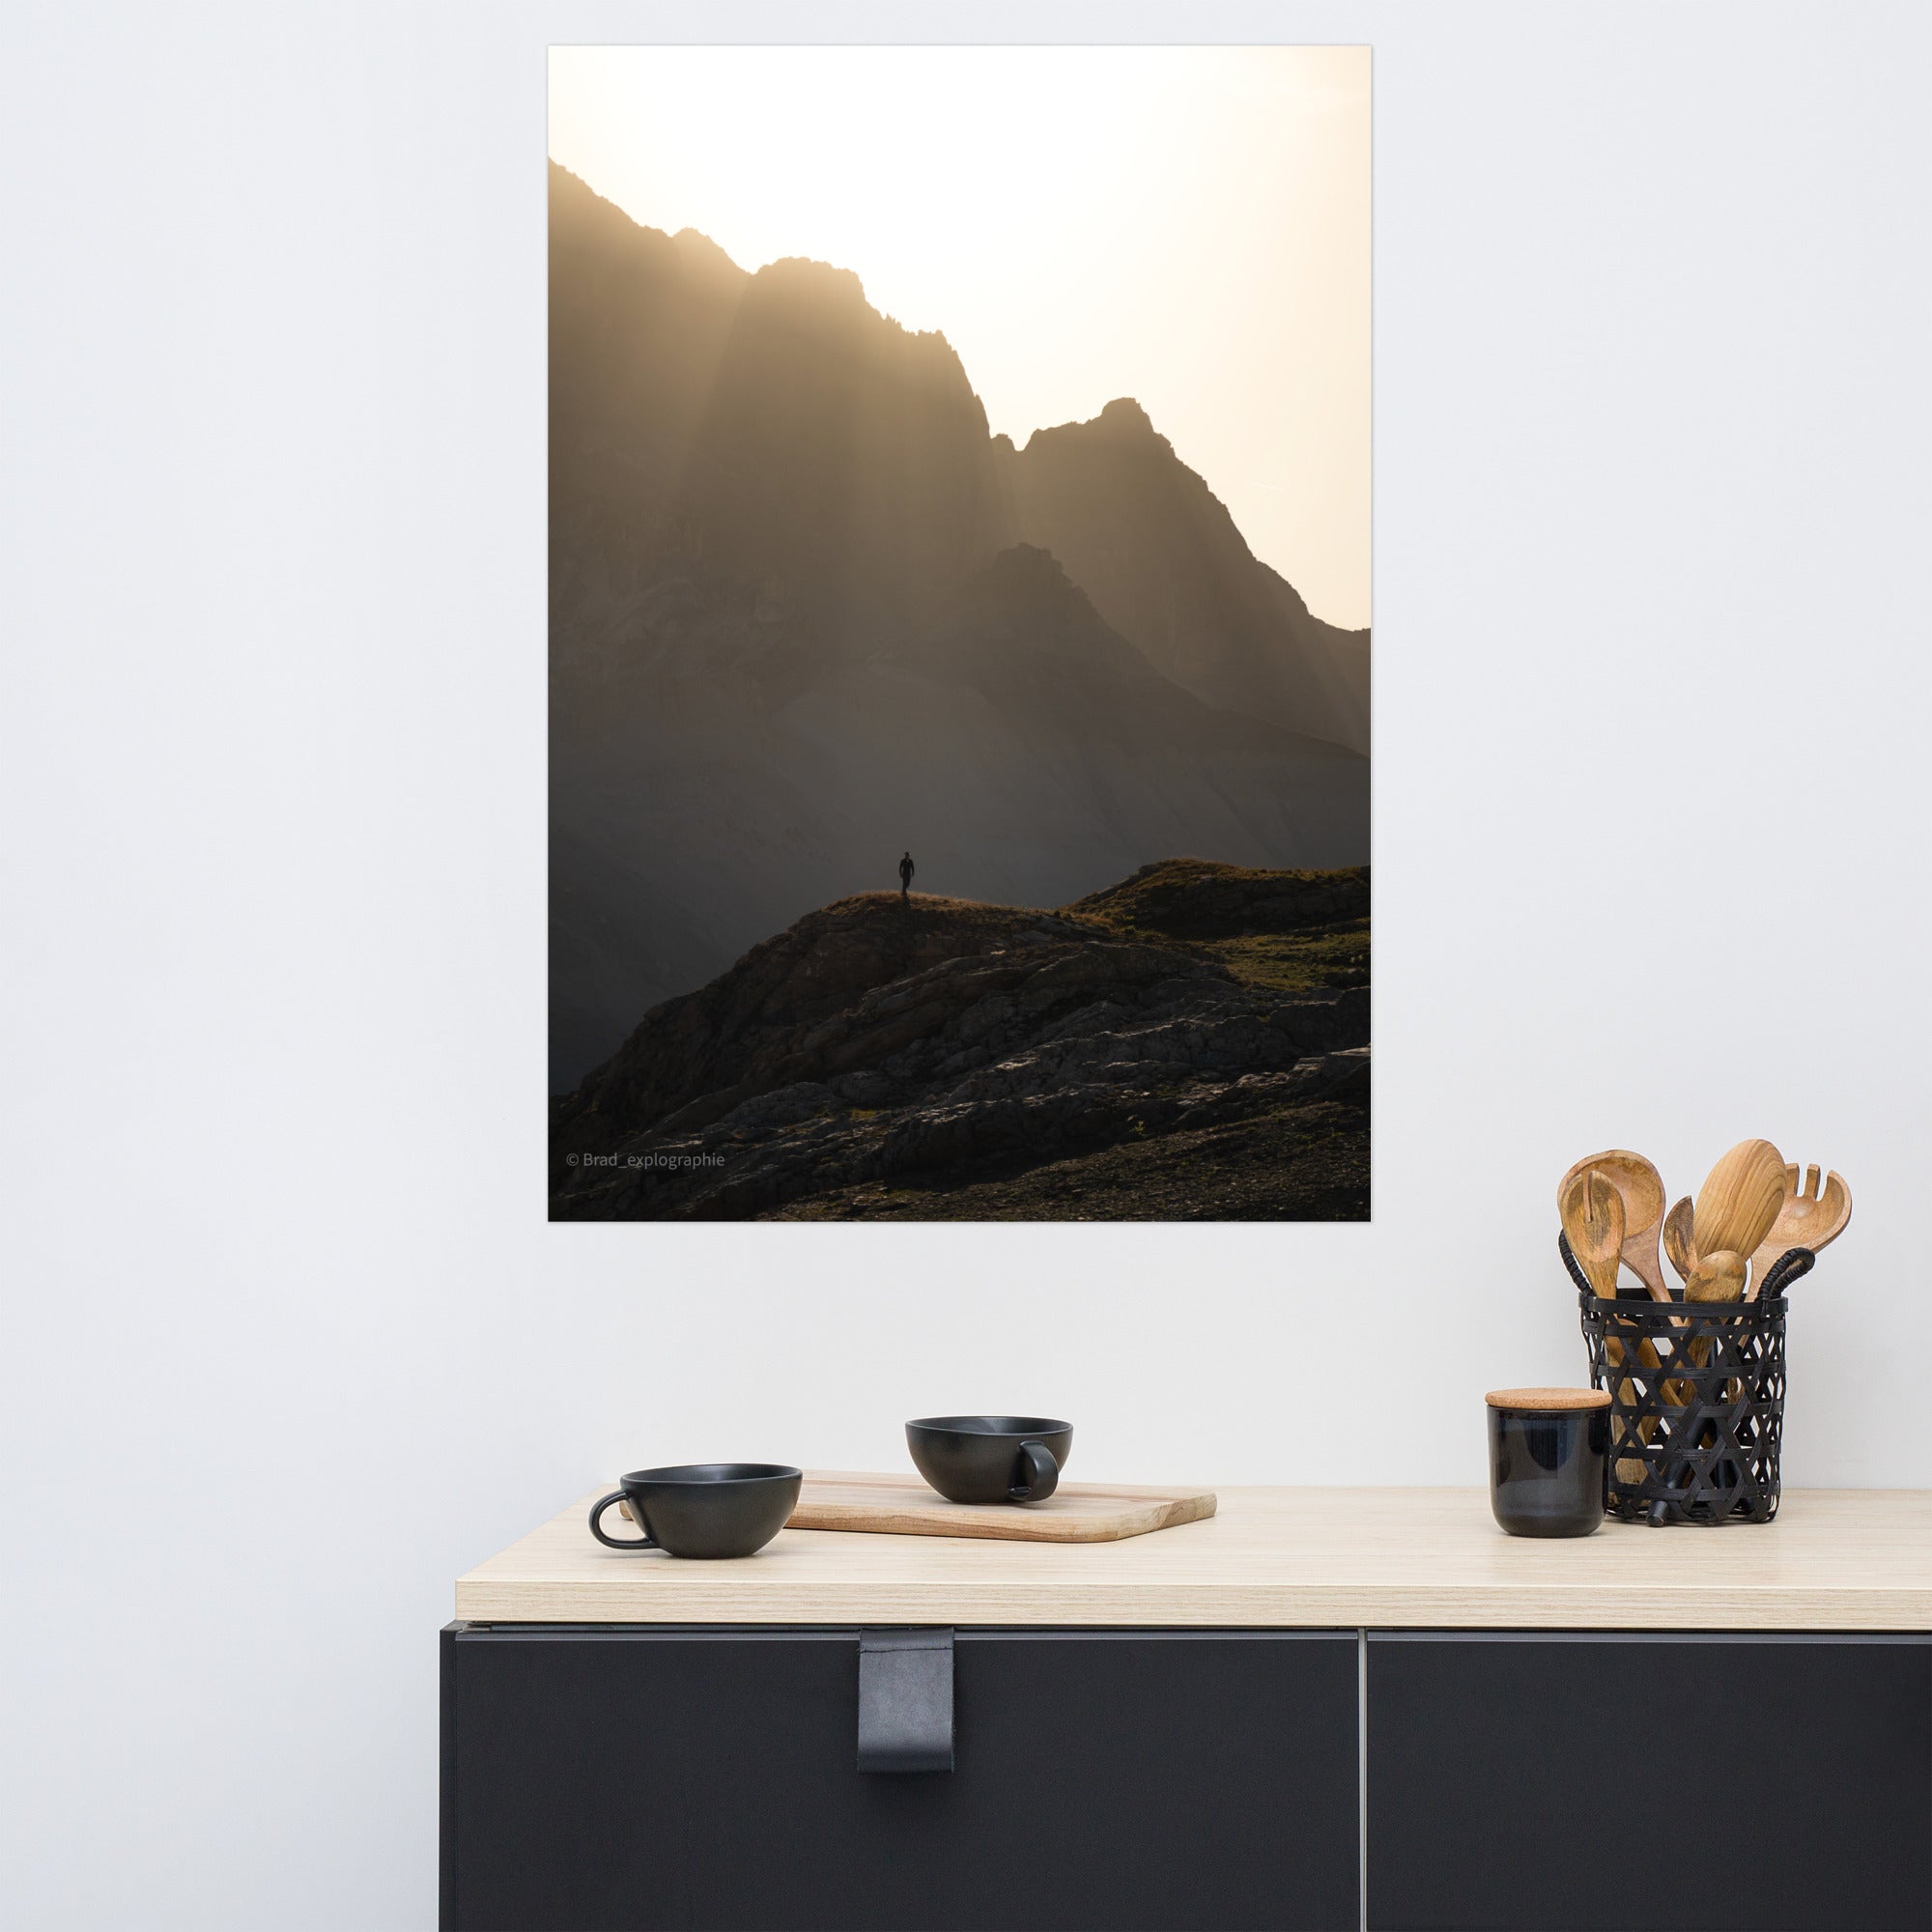 Vue panoramique des montagnes au coucher du soleil, où la lumière dorée enveloppe les pics et les vallées – une œuvre signée par Brad_explographie.